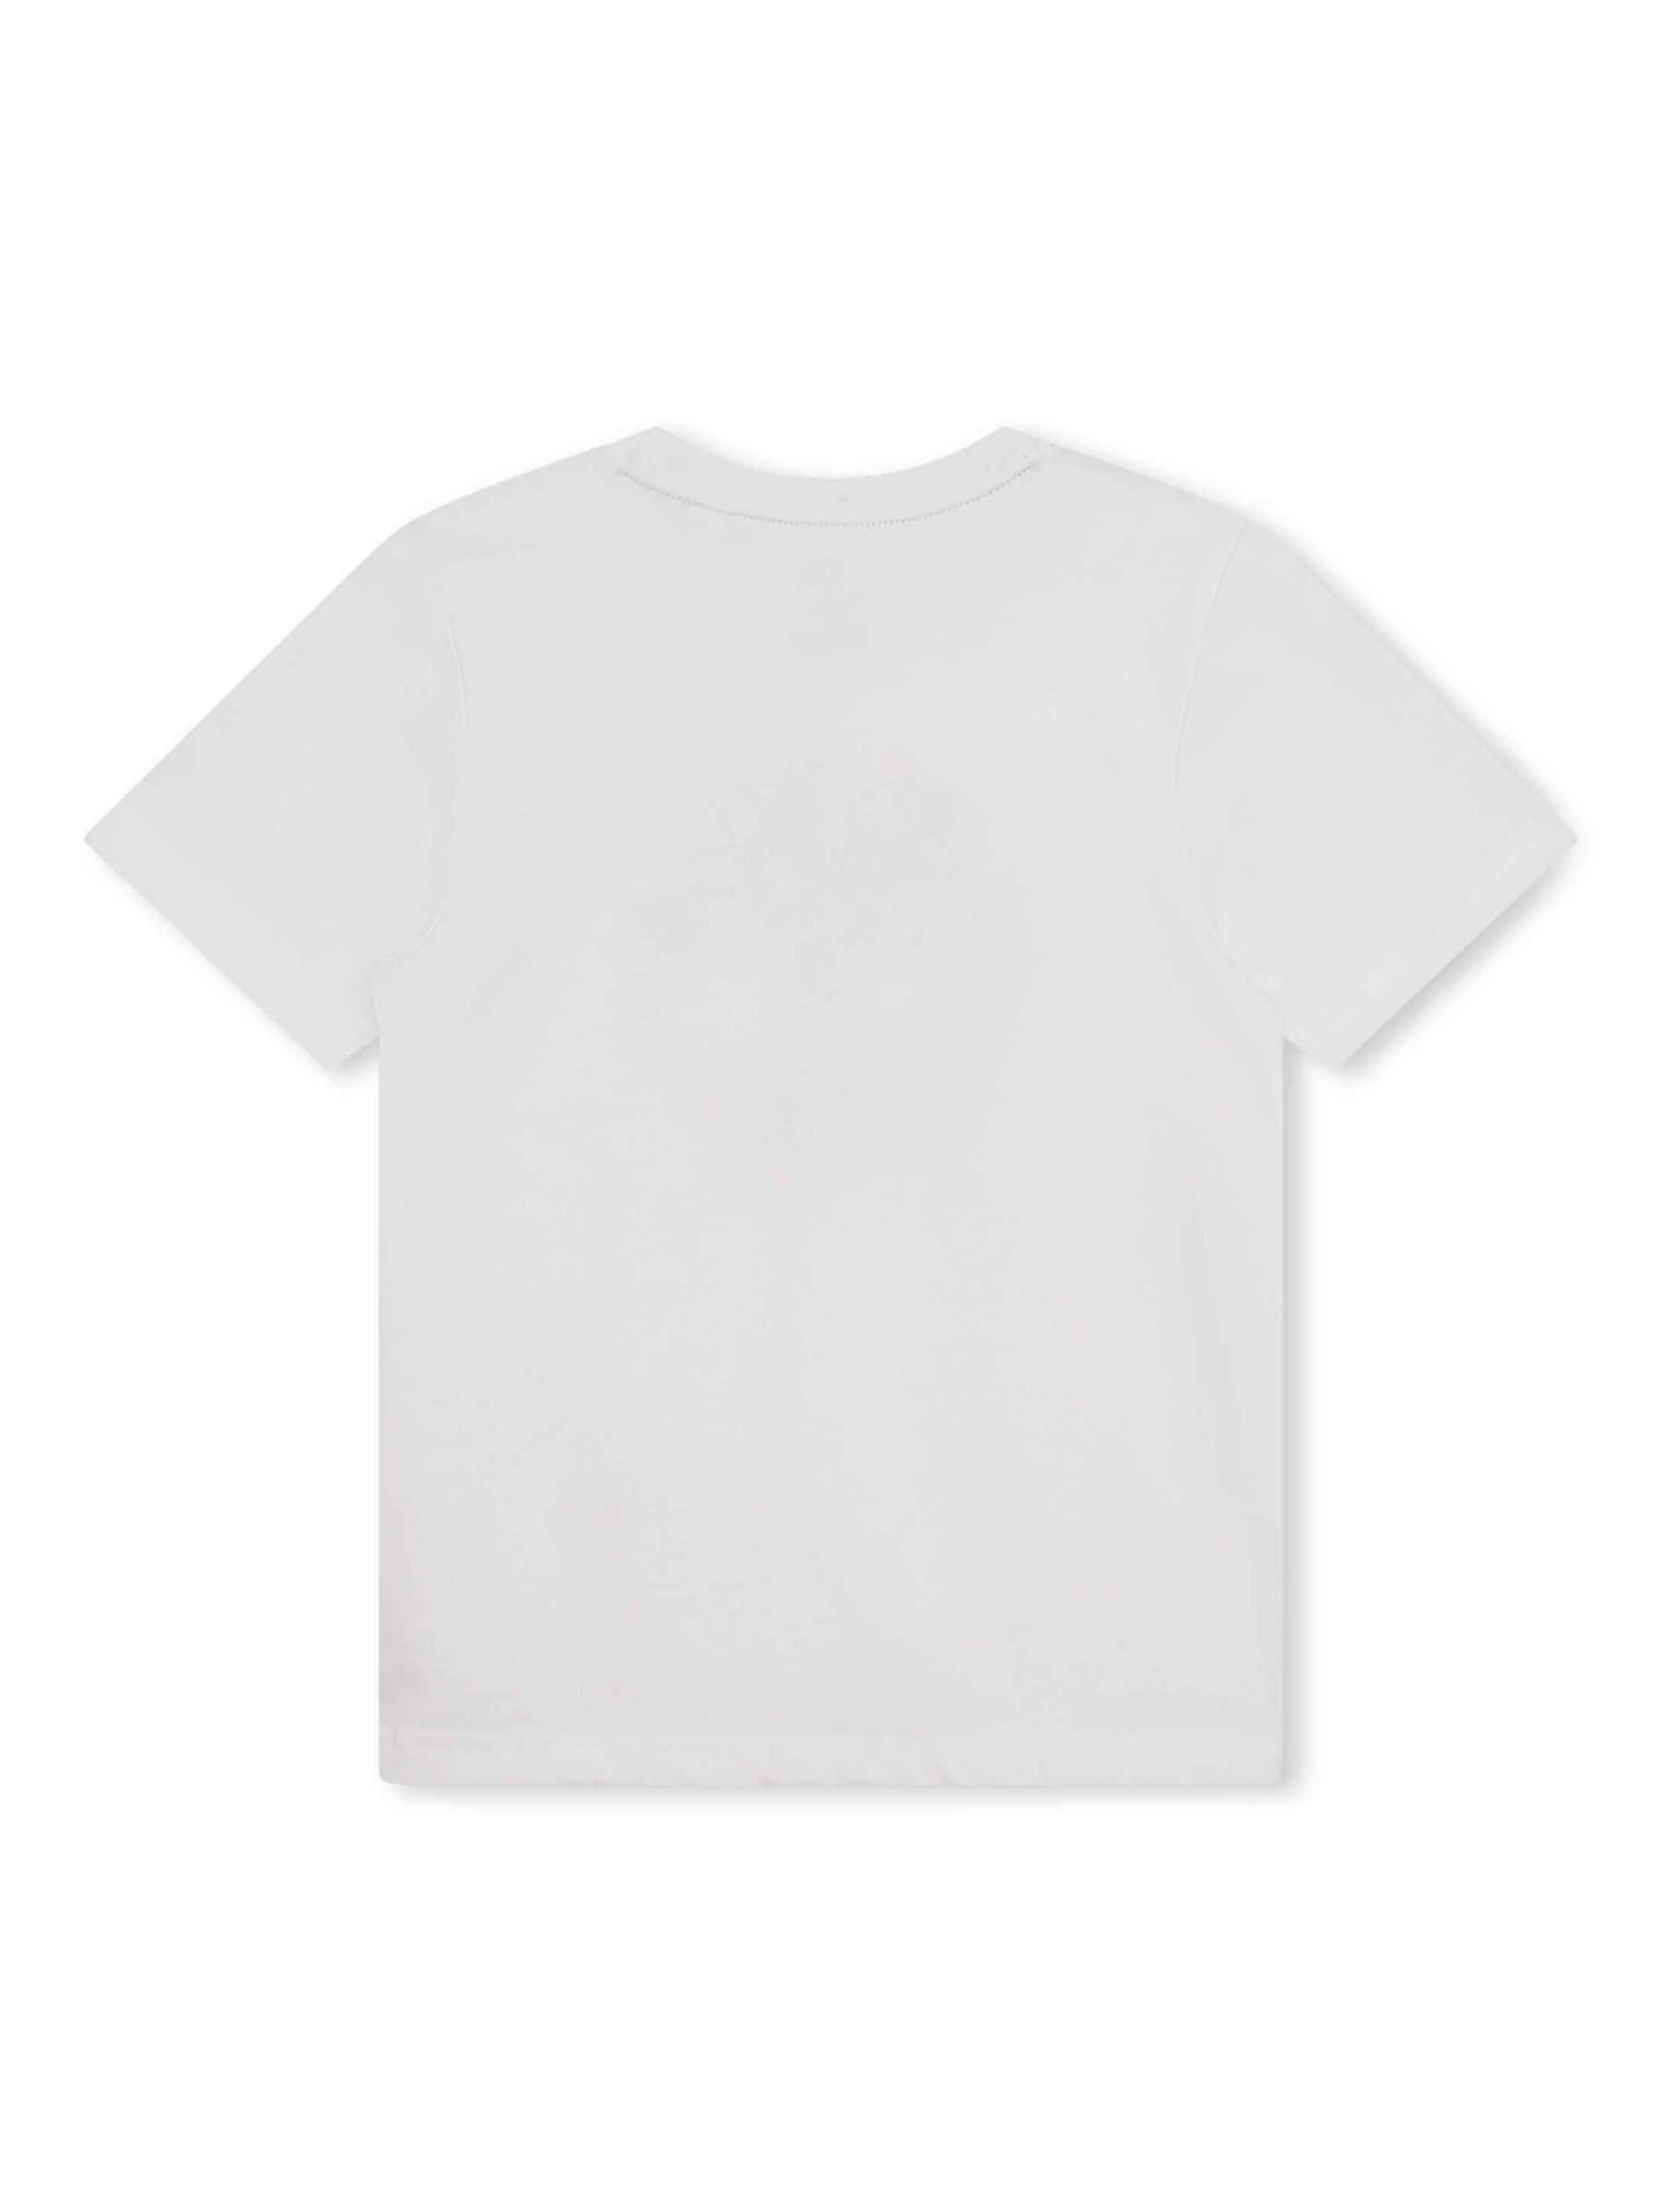 Timberland Kids' Printed T-Shirt, White at John Lewis & Partners